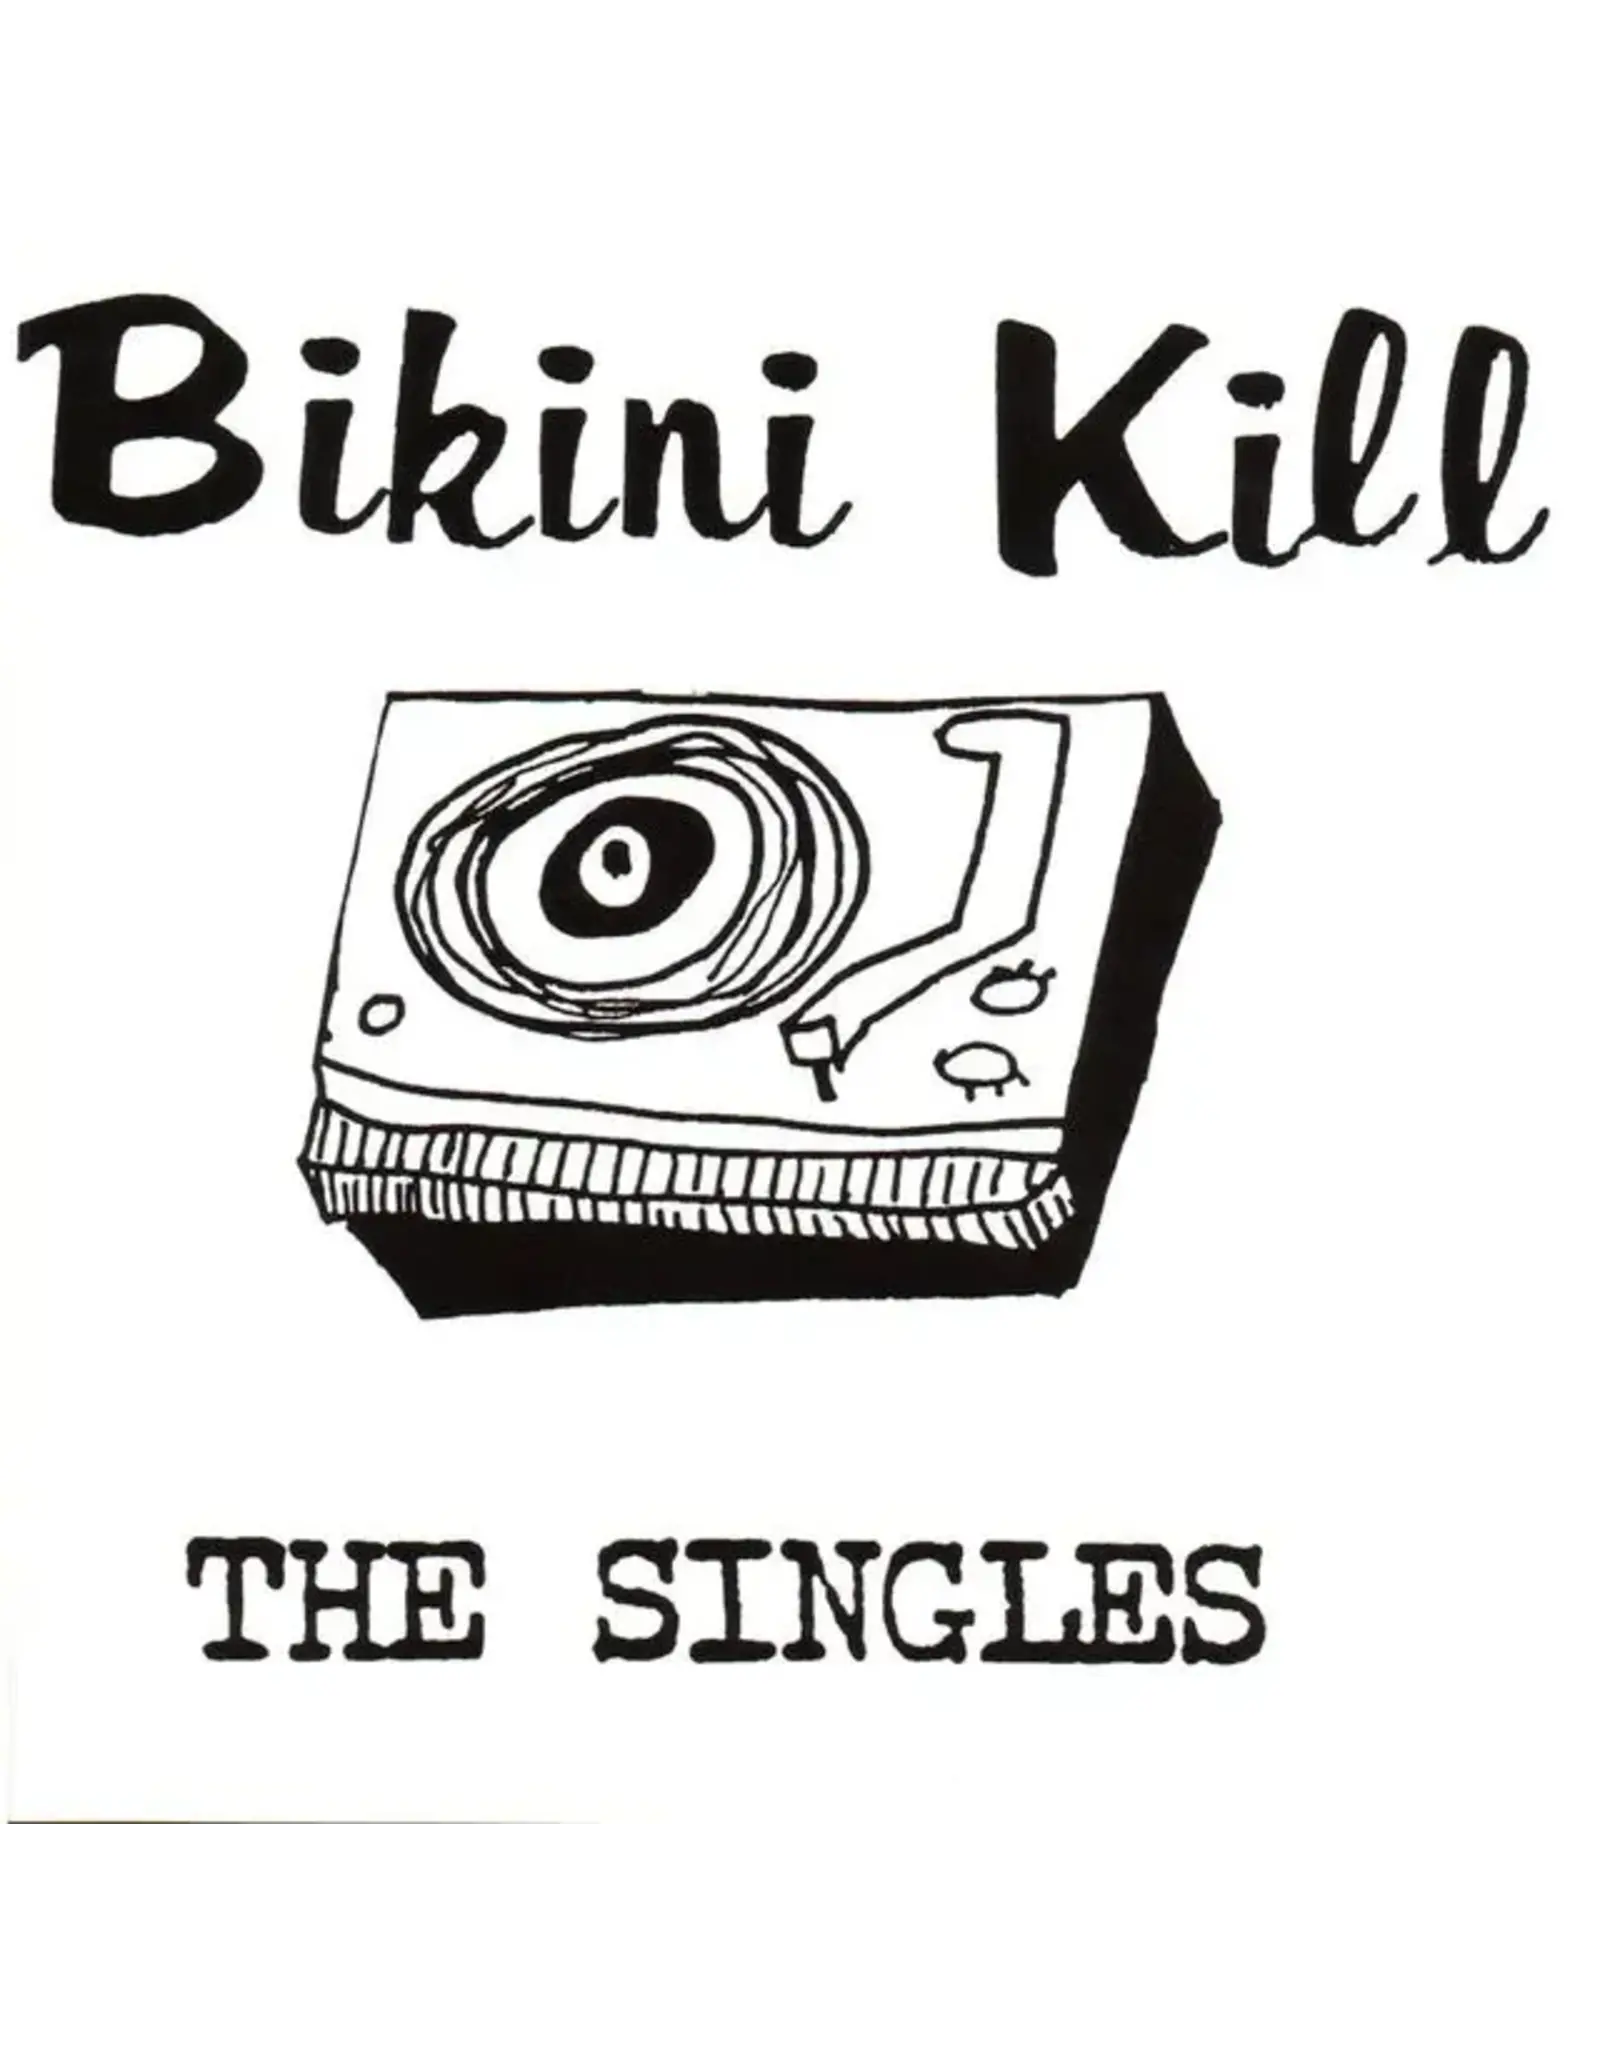 Bikini Kill - The Singles (Clear Blue Vinyl)